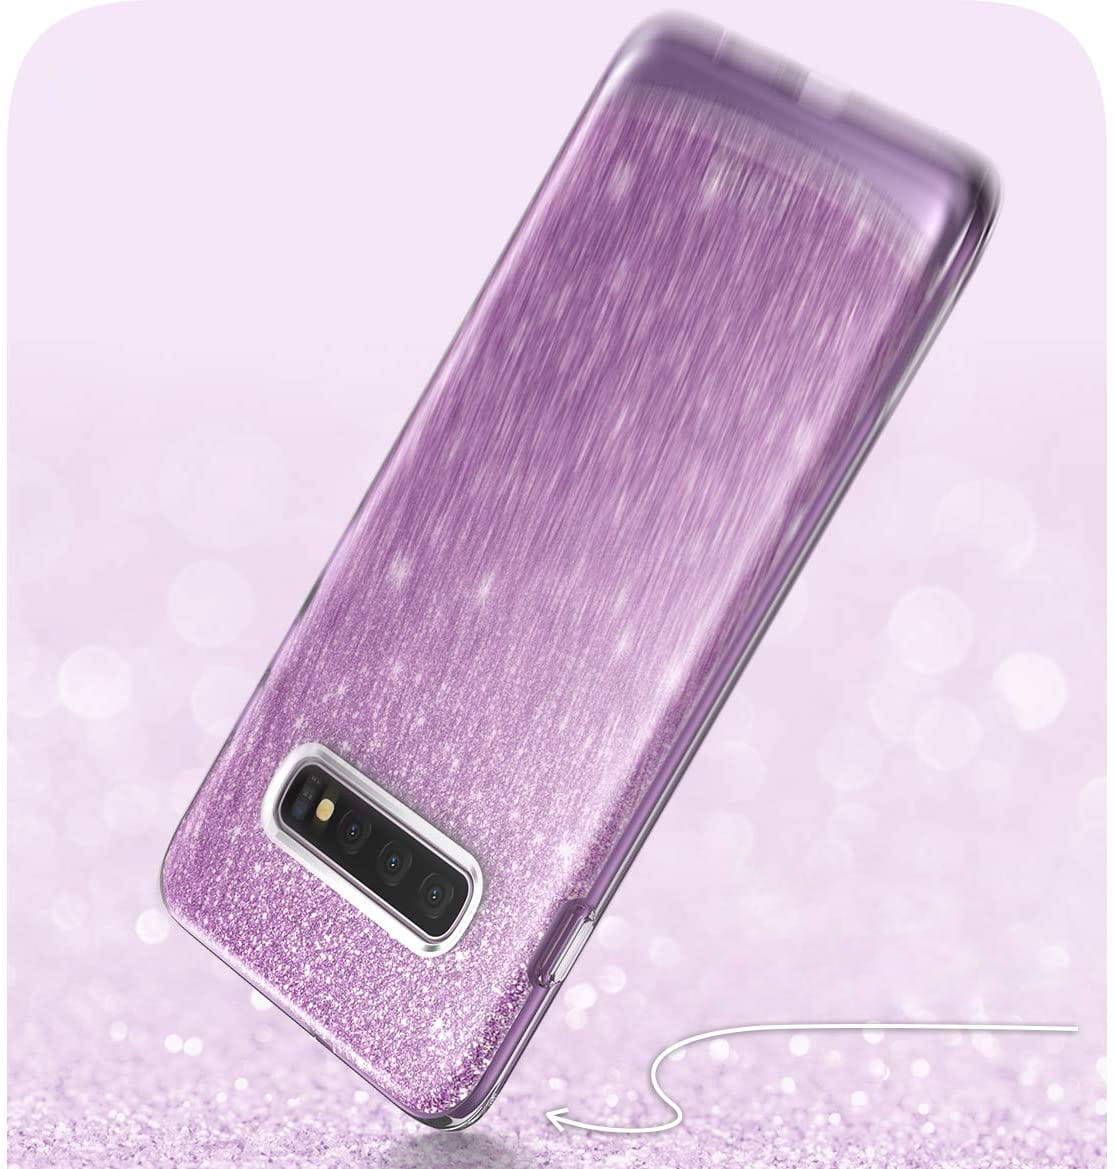 Gepanzerte Schutzhülle Supcase i-Blason Cosmo für Galaxy S10, glitzer violett.